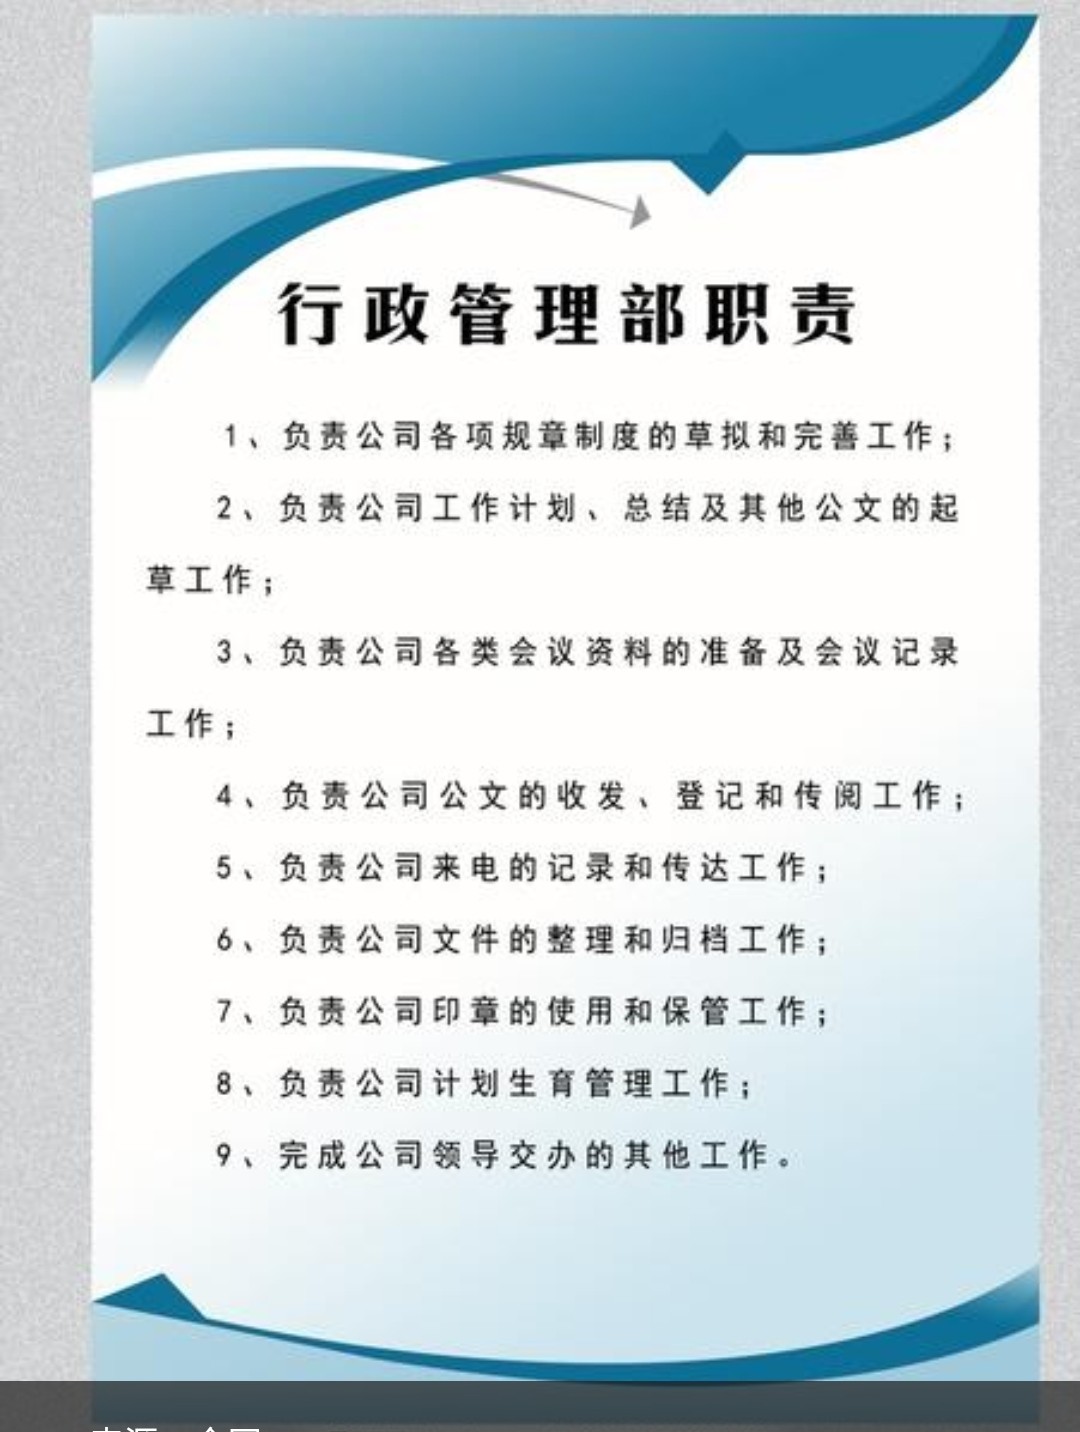 中国政法大学行政管理专业就业前景 行政管理专业就业前景